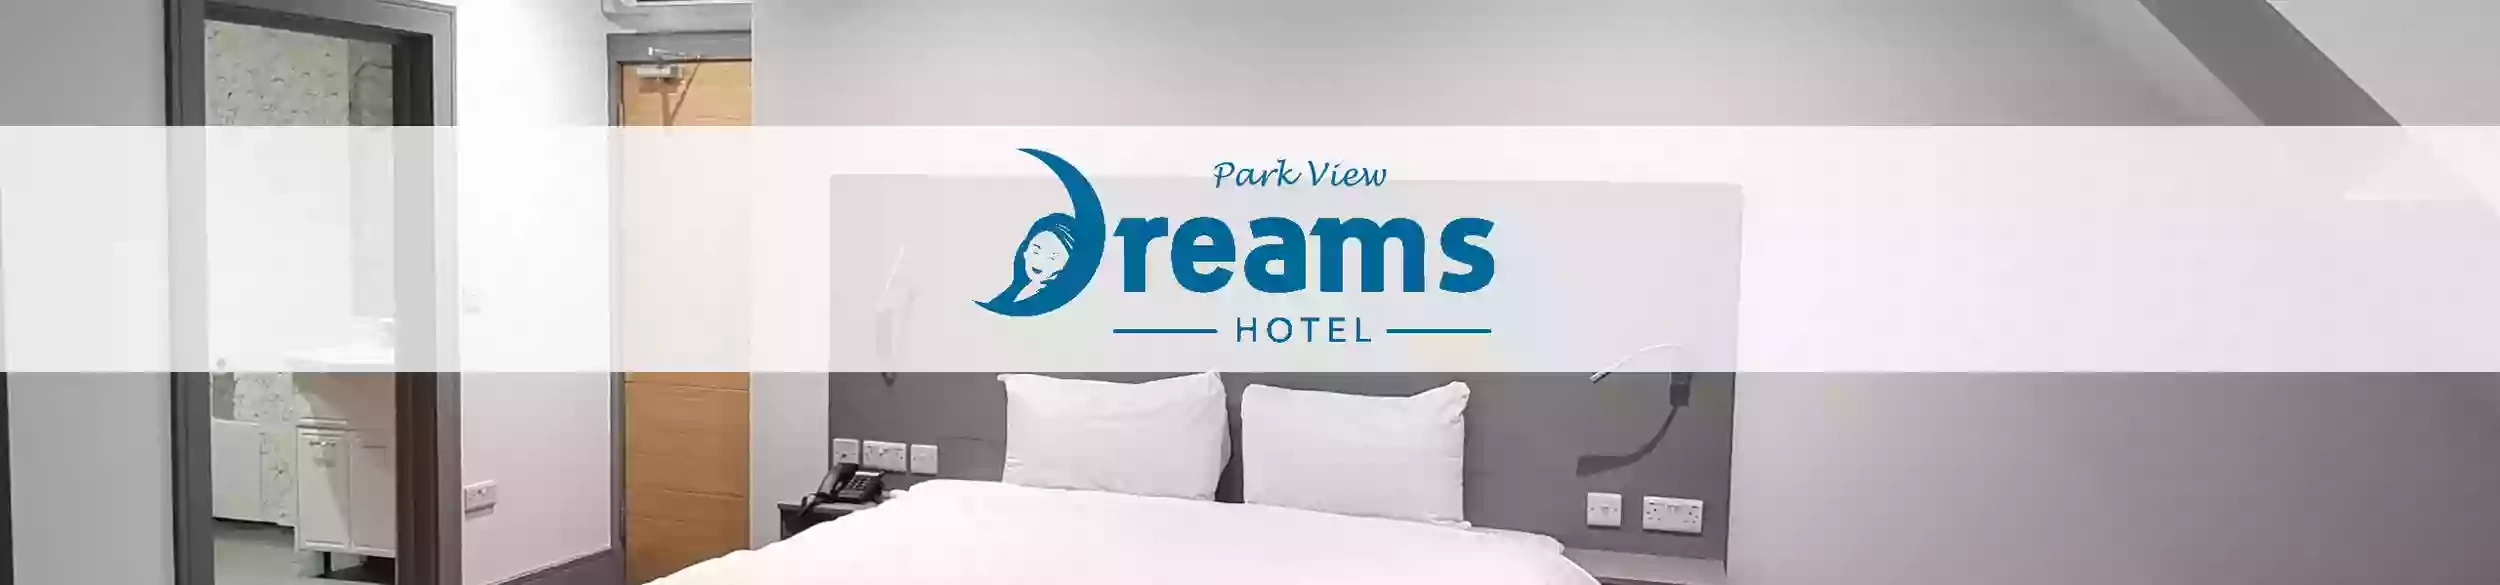 Dreams Hotel - Park View